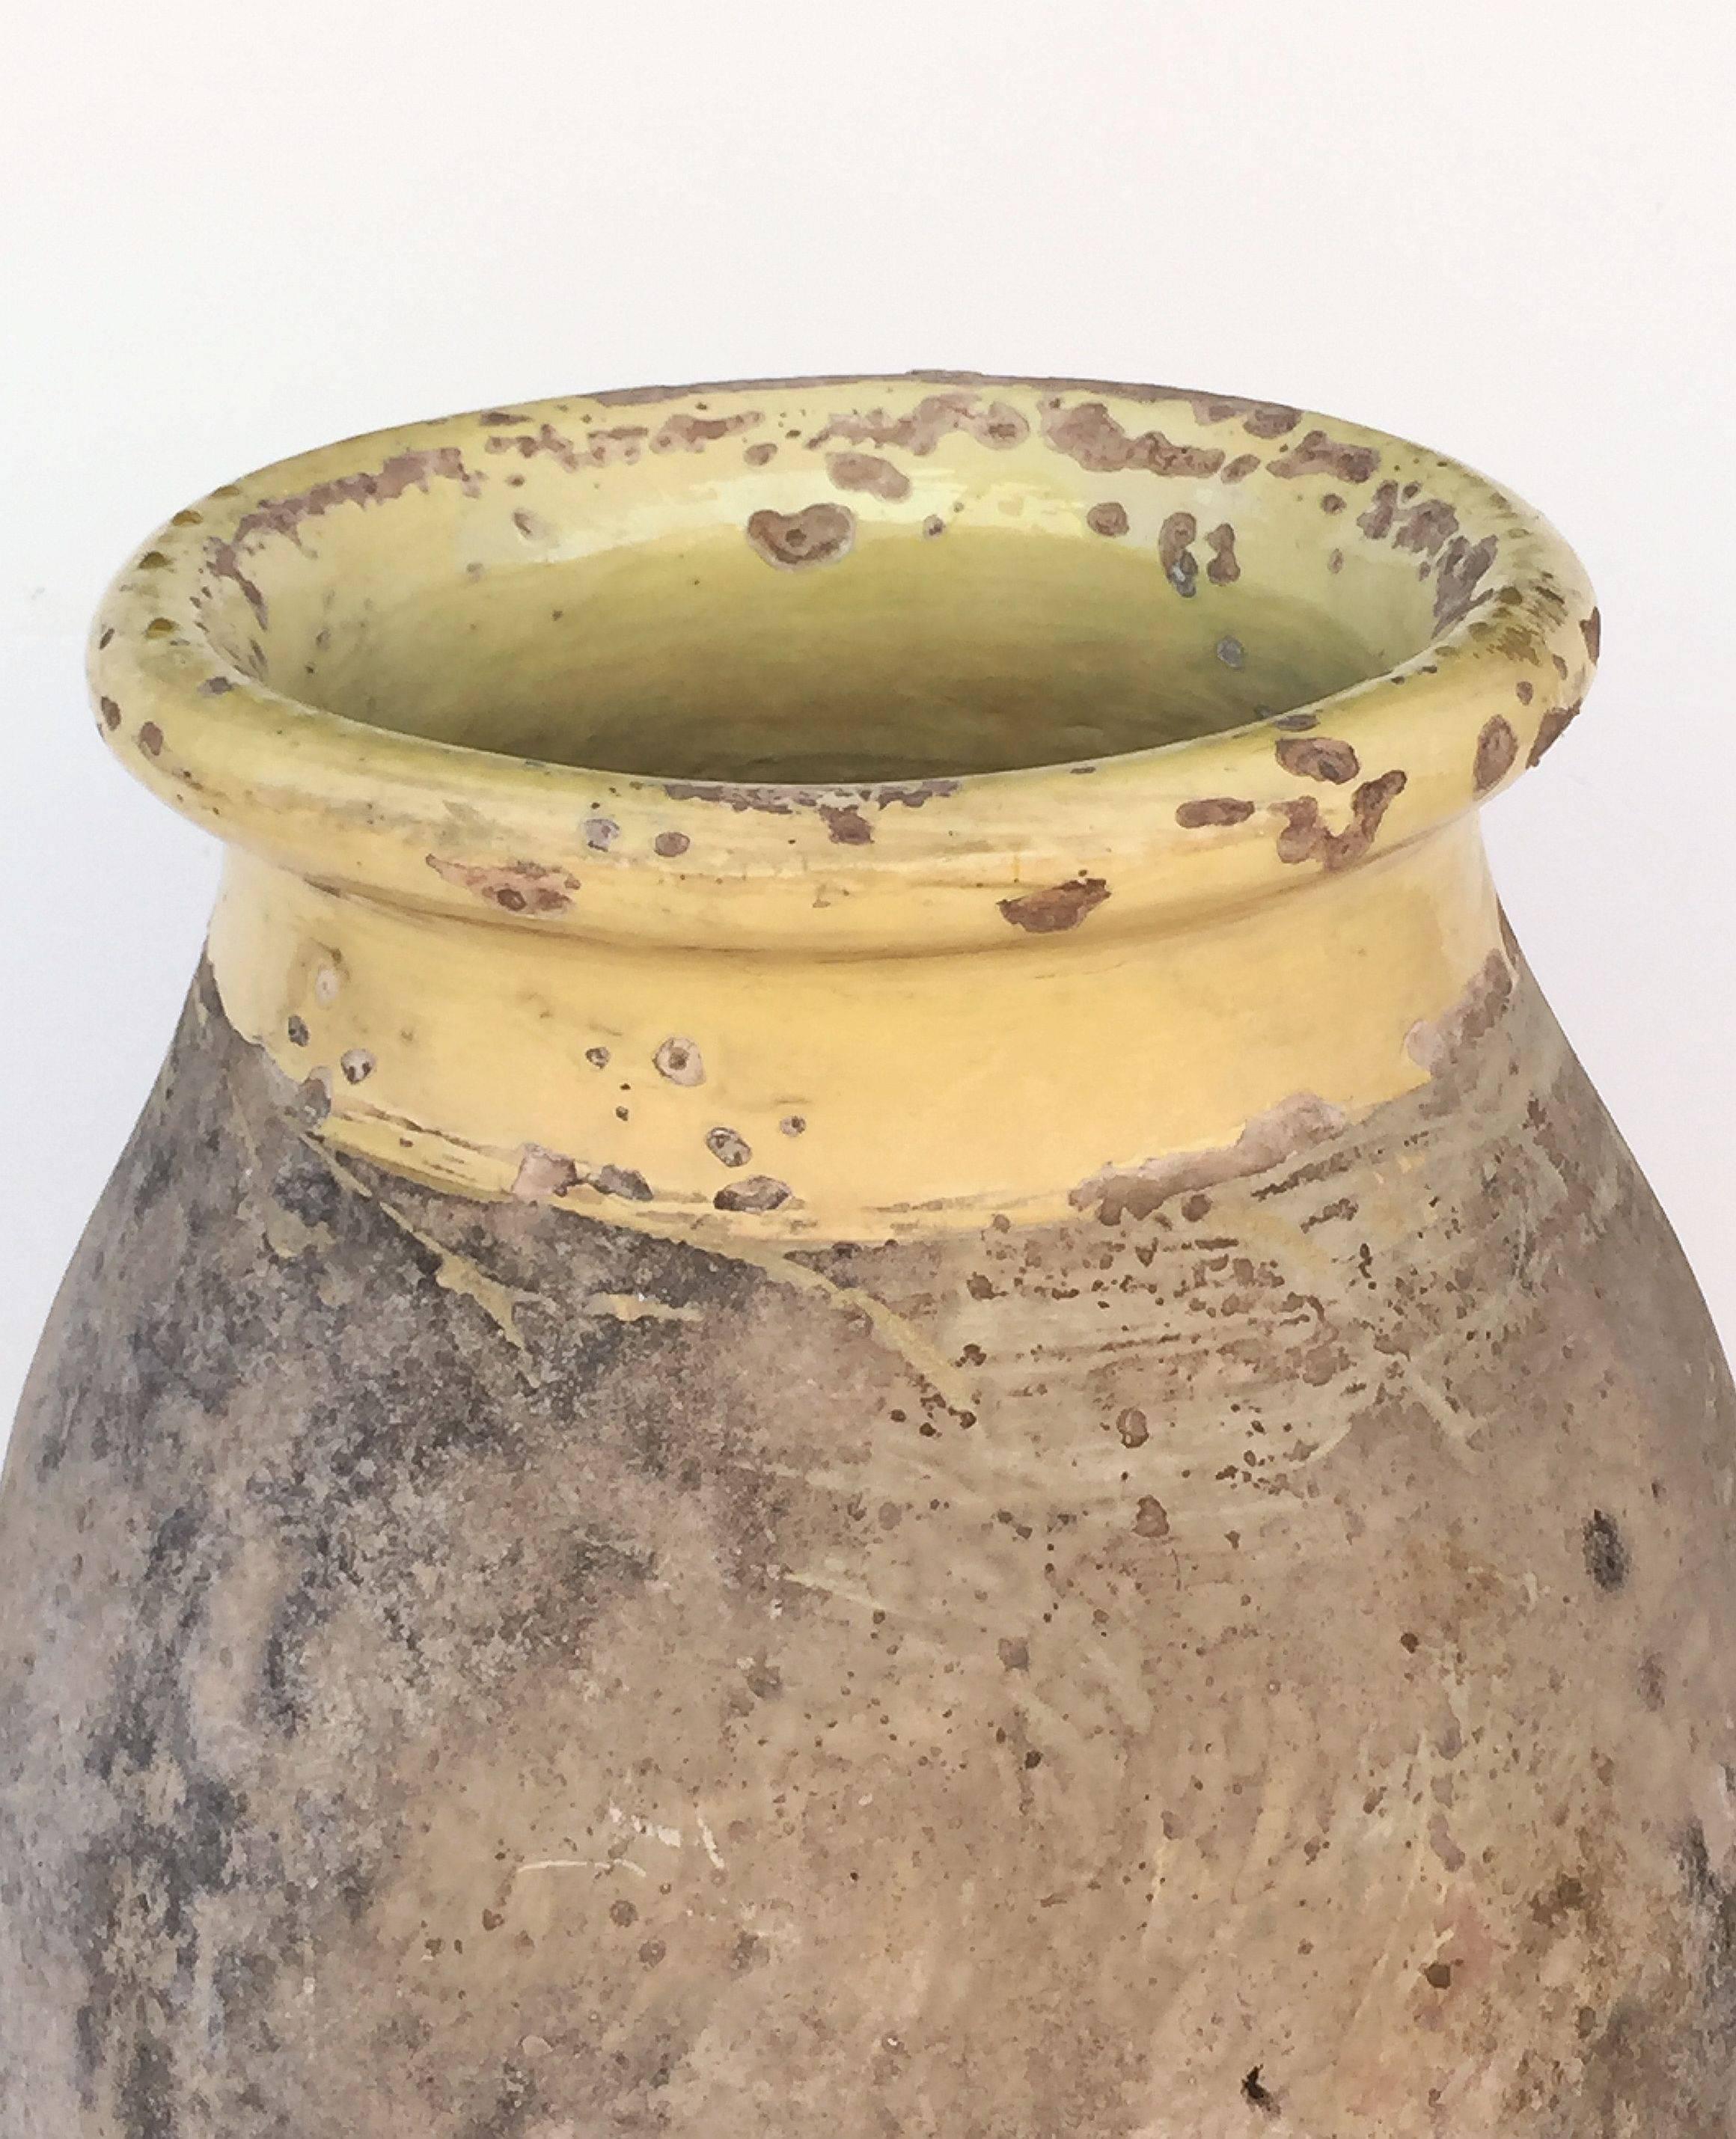 Glazed Large Biot Garden Urn or Oil Jar from France